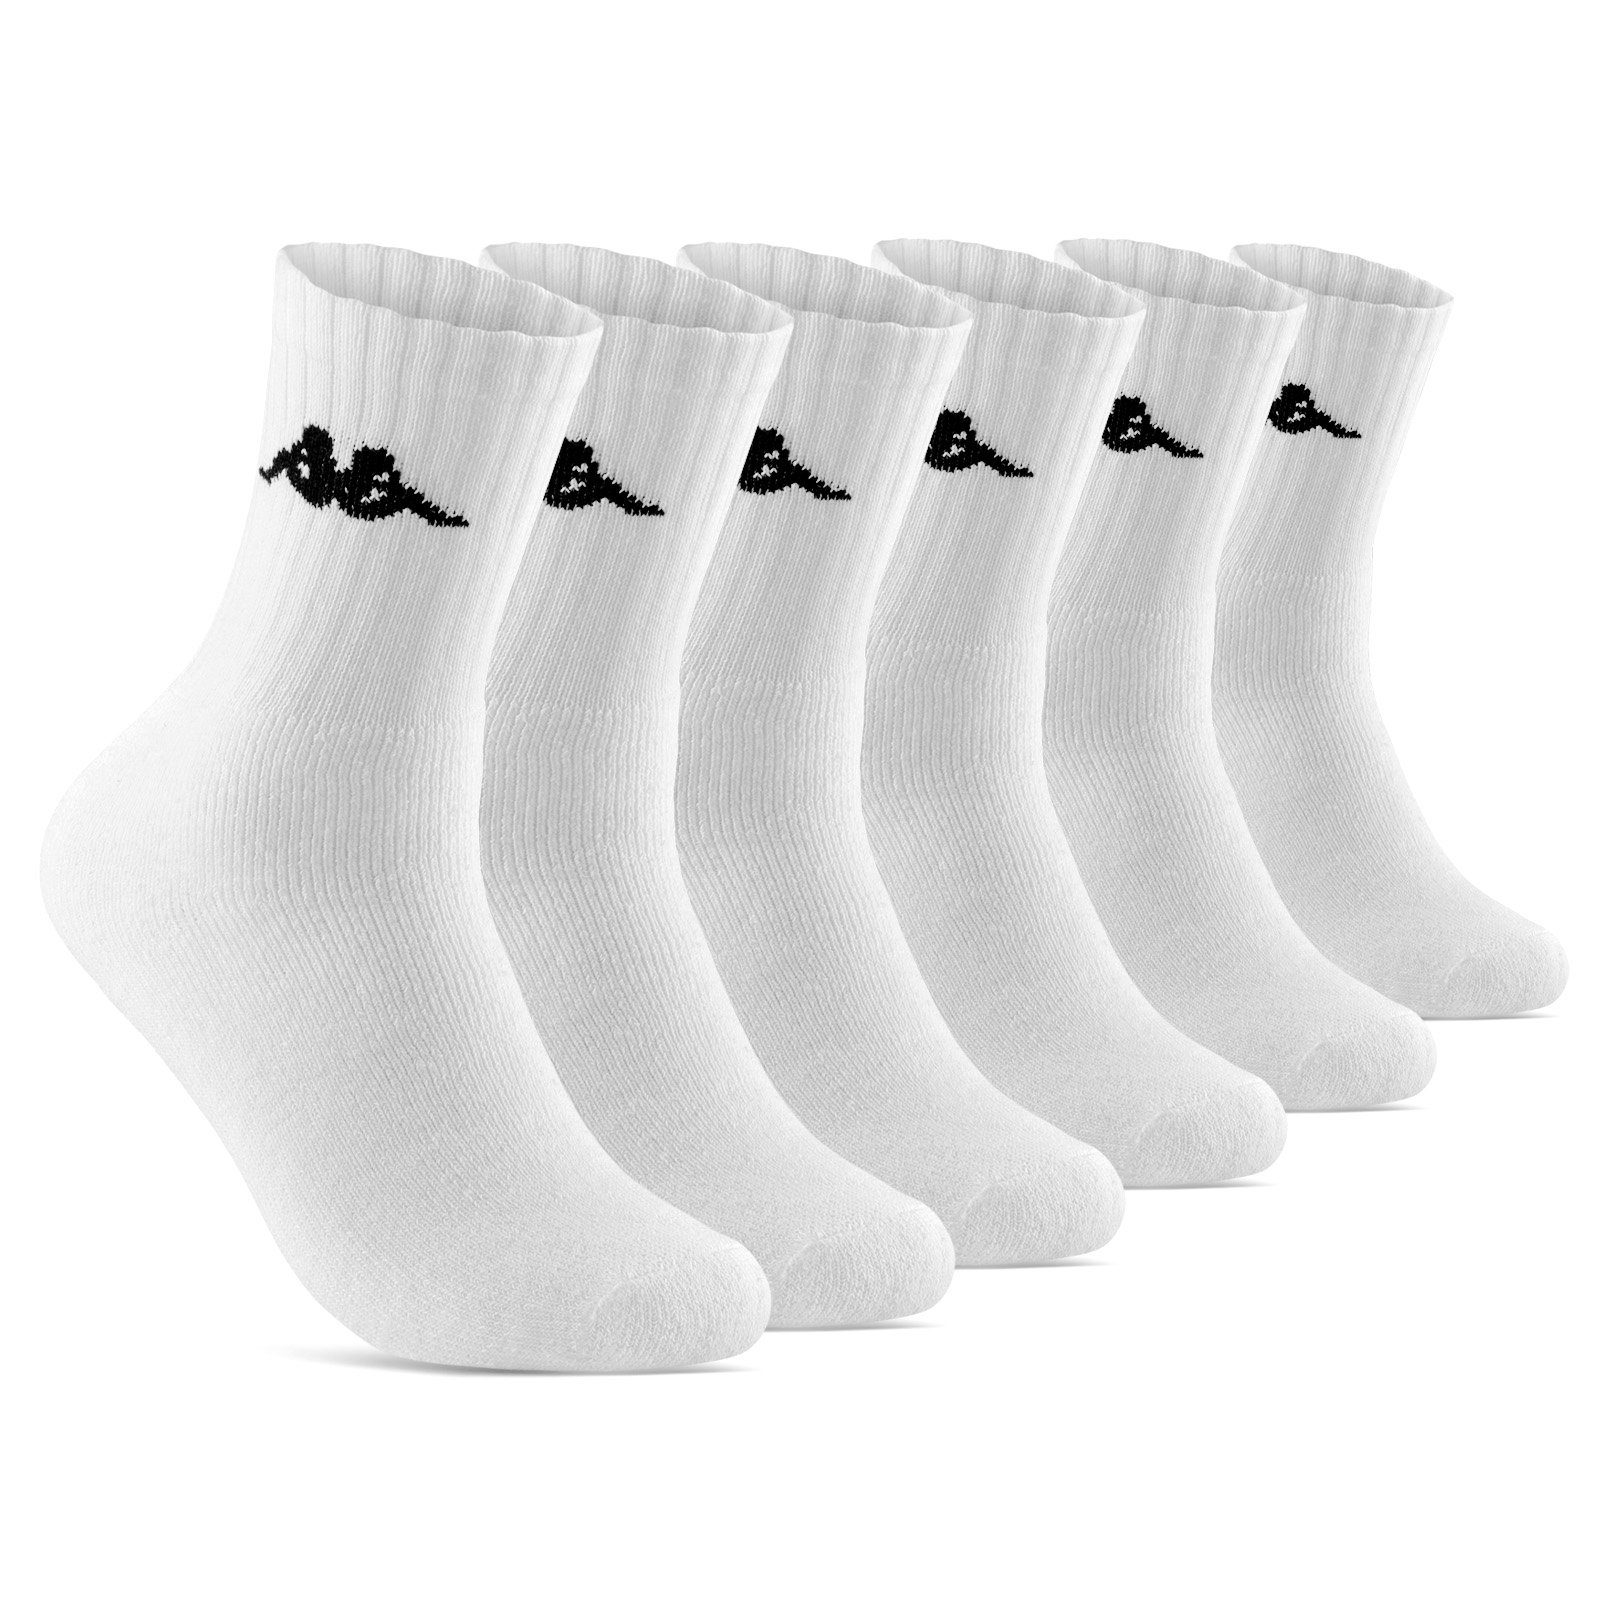 sockenkauf24 Sportsocken 6 oder 12 Paar KAPPA Socken Herren & Damen Sportsocken (Weiß, 6-Paar, 43-46) Arbeitssocken Baumwolle WP | Sportsocken